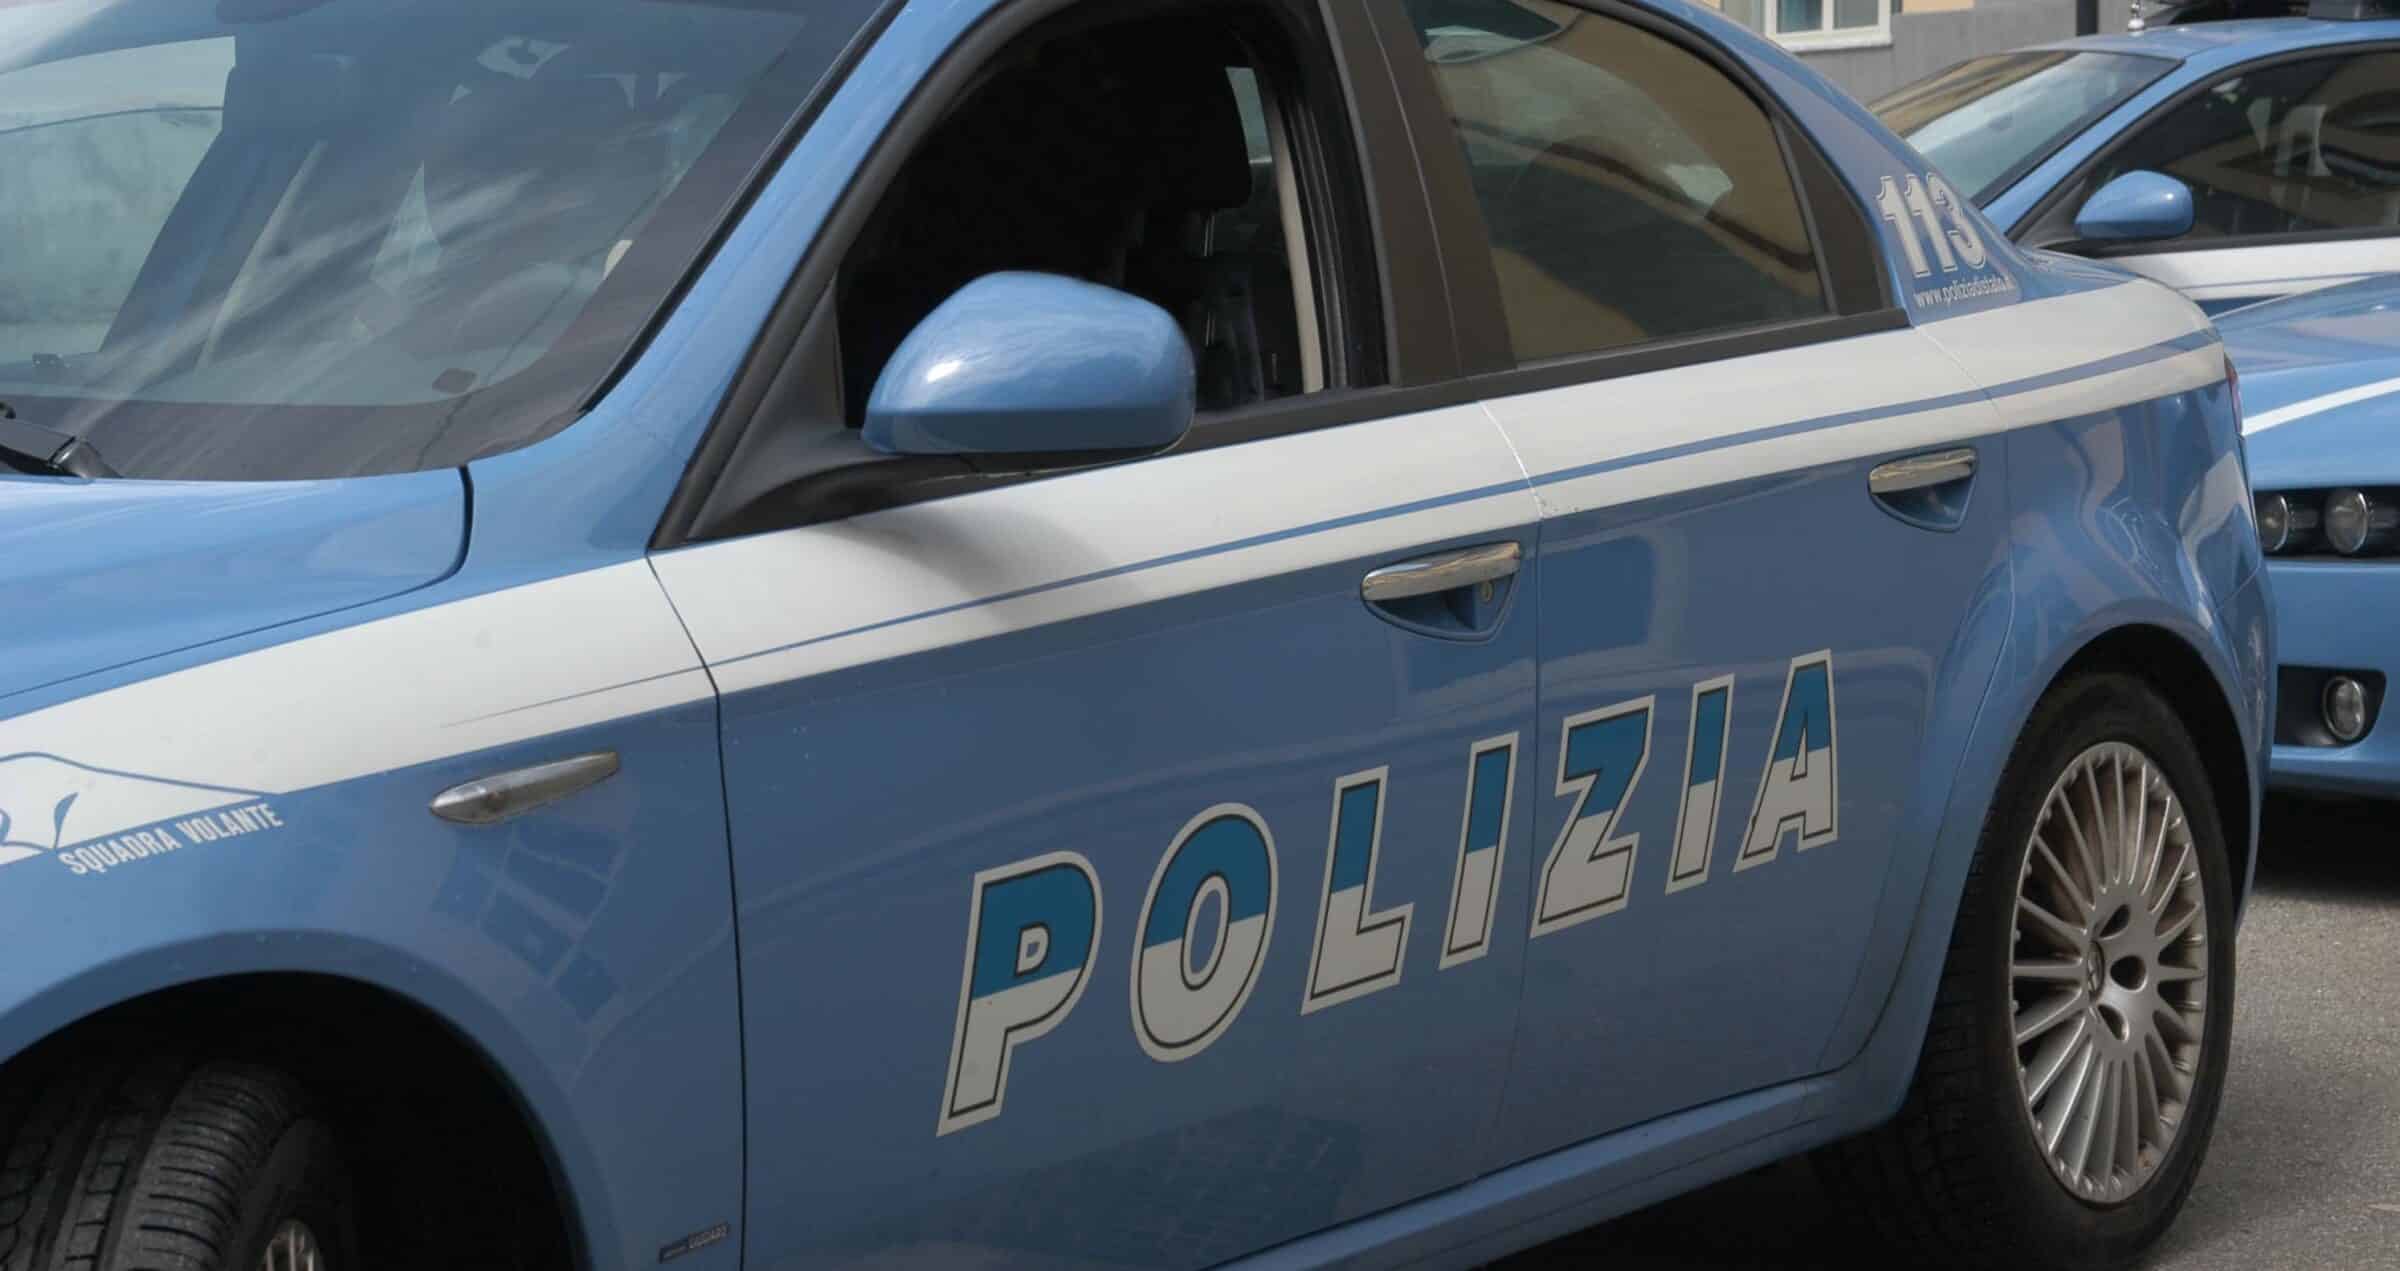 Droga in casa e perquisizione personale fruttuosa: fermato 40enne a Catania